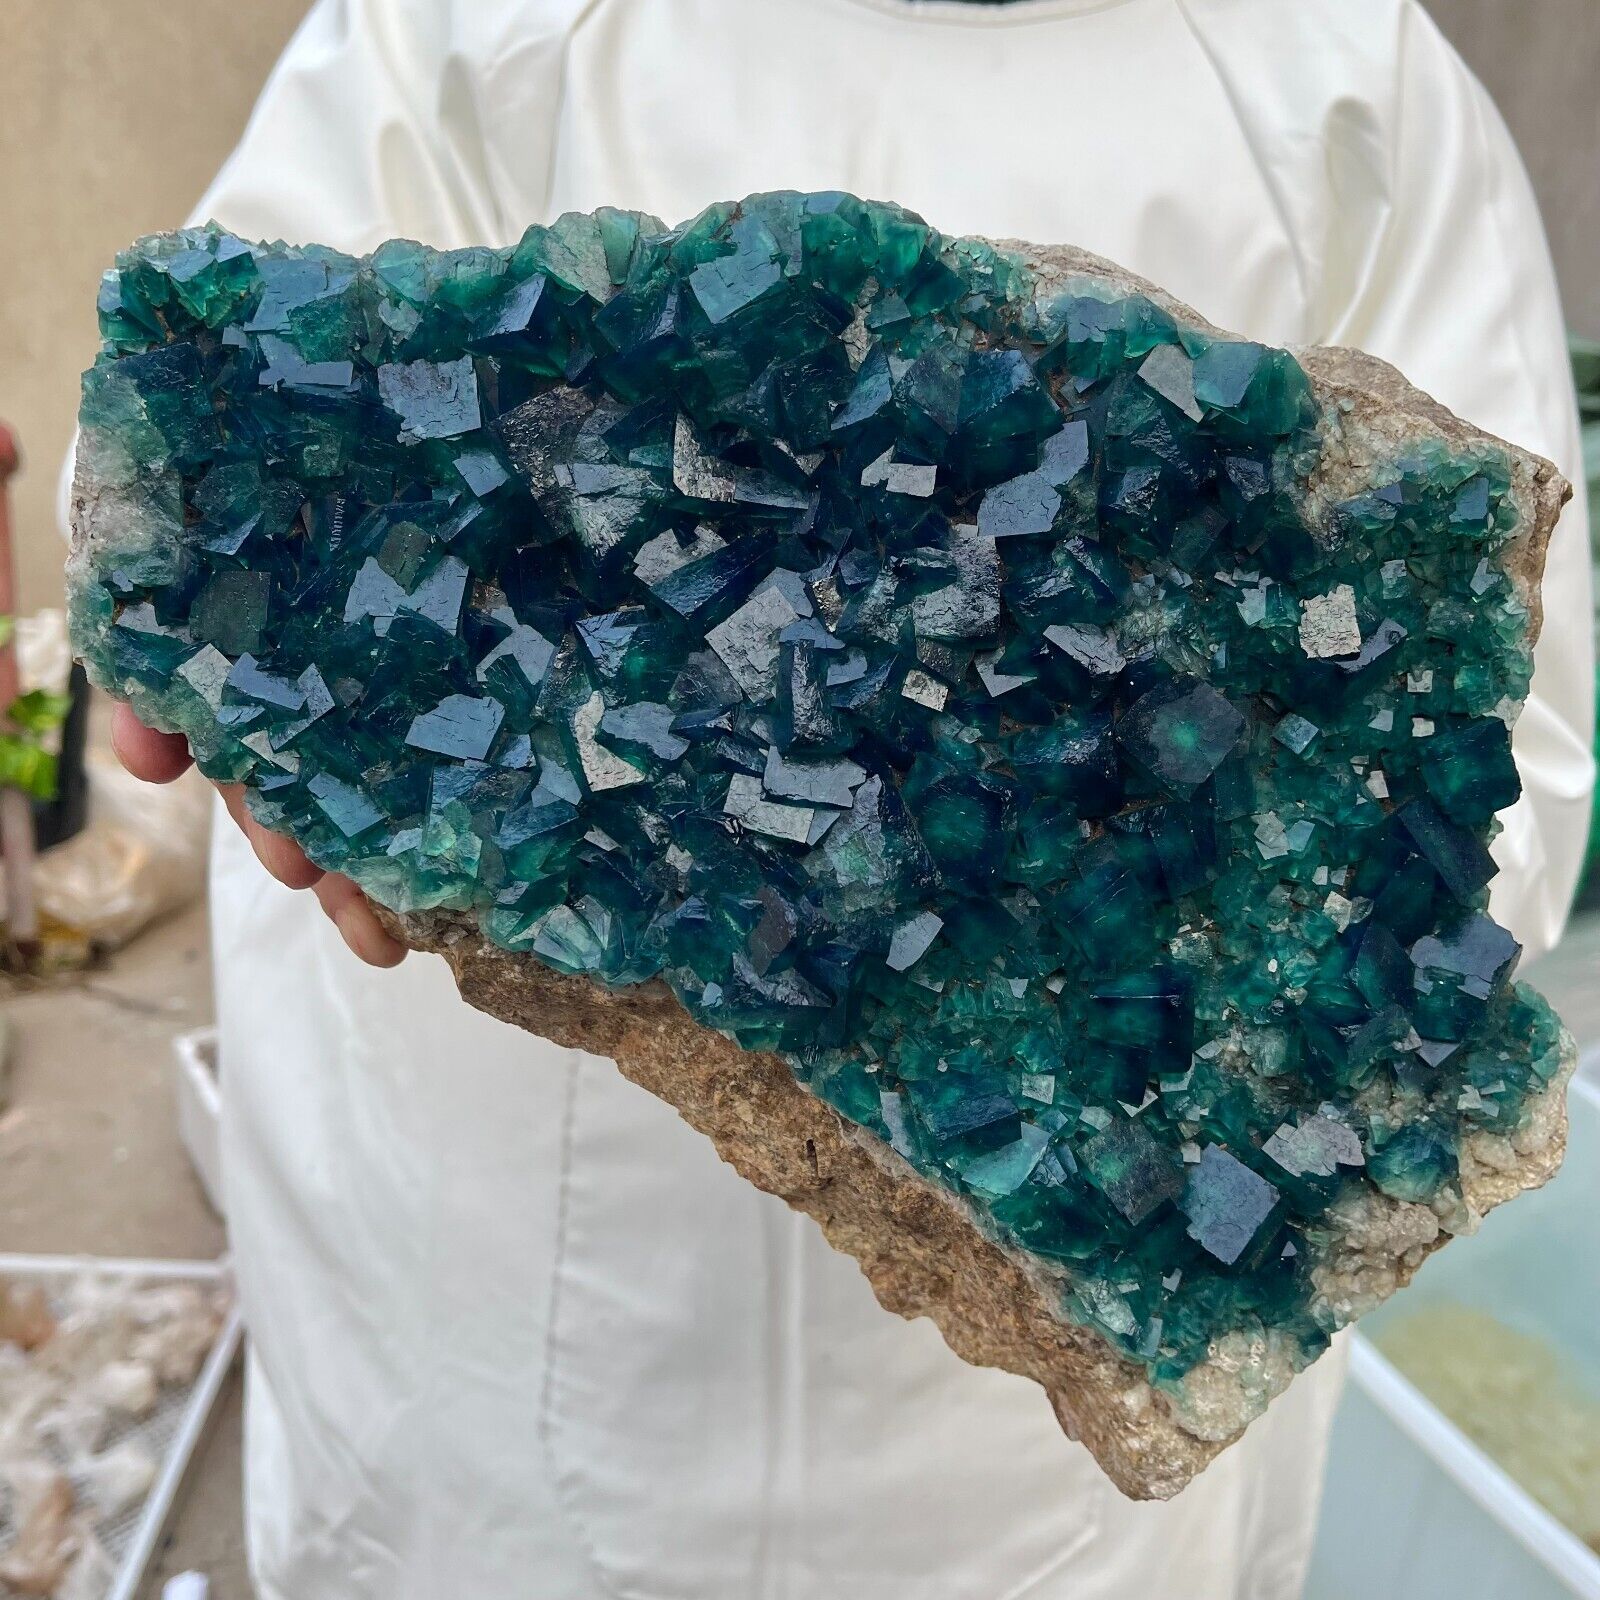 11.8lb Large Natural Green Cube Fluorite Mineral quartz Crystal cluster Specimen